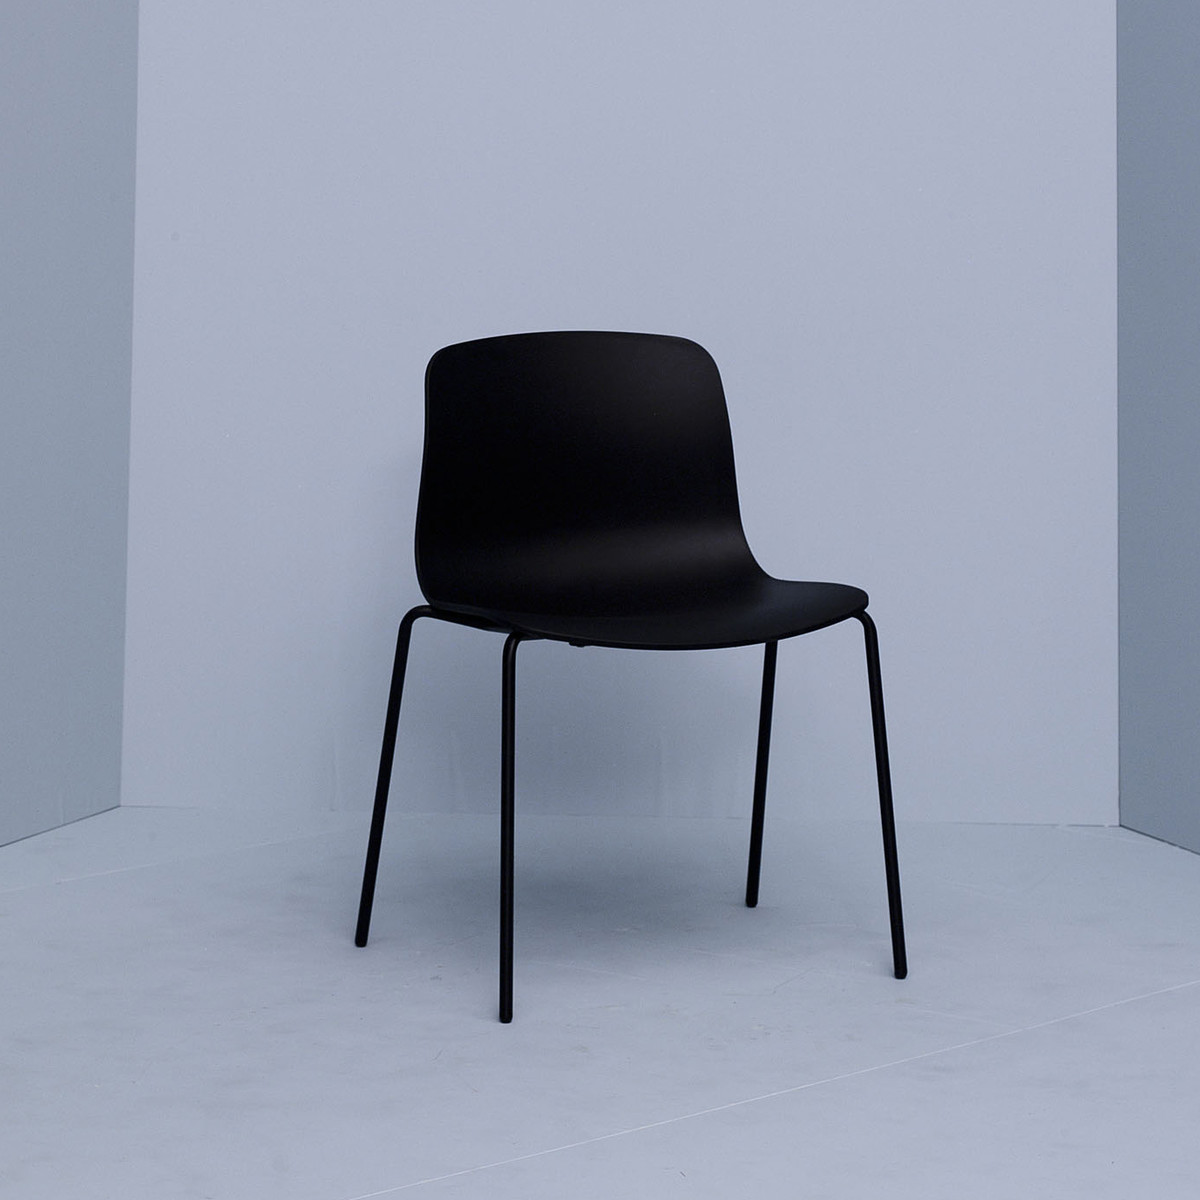 La chaise AAC16 fait partie de la célèbre collection de chaise About a Chair de Hay: sobre, tendance et design